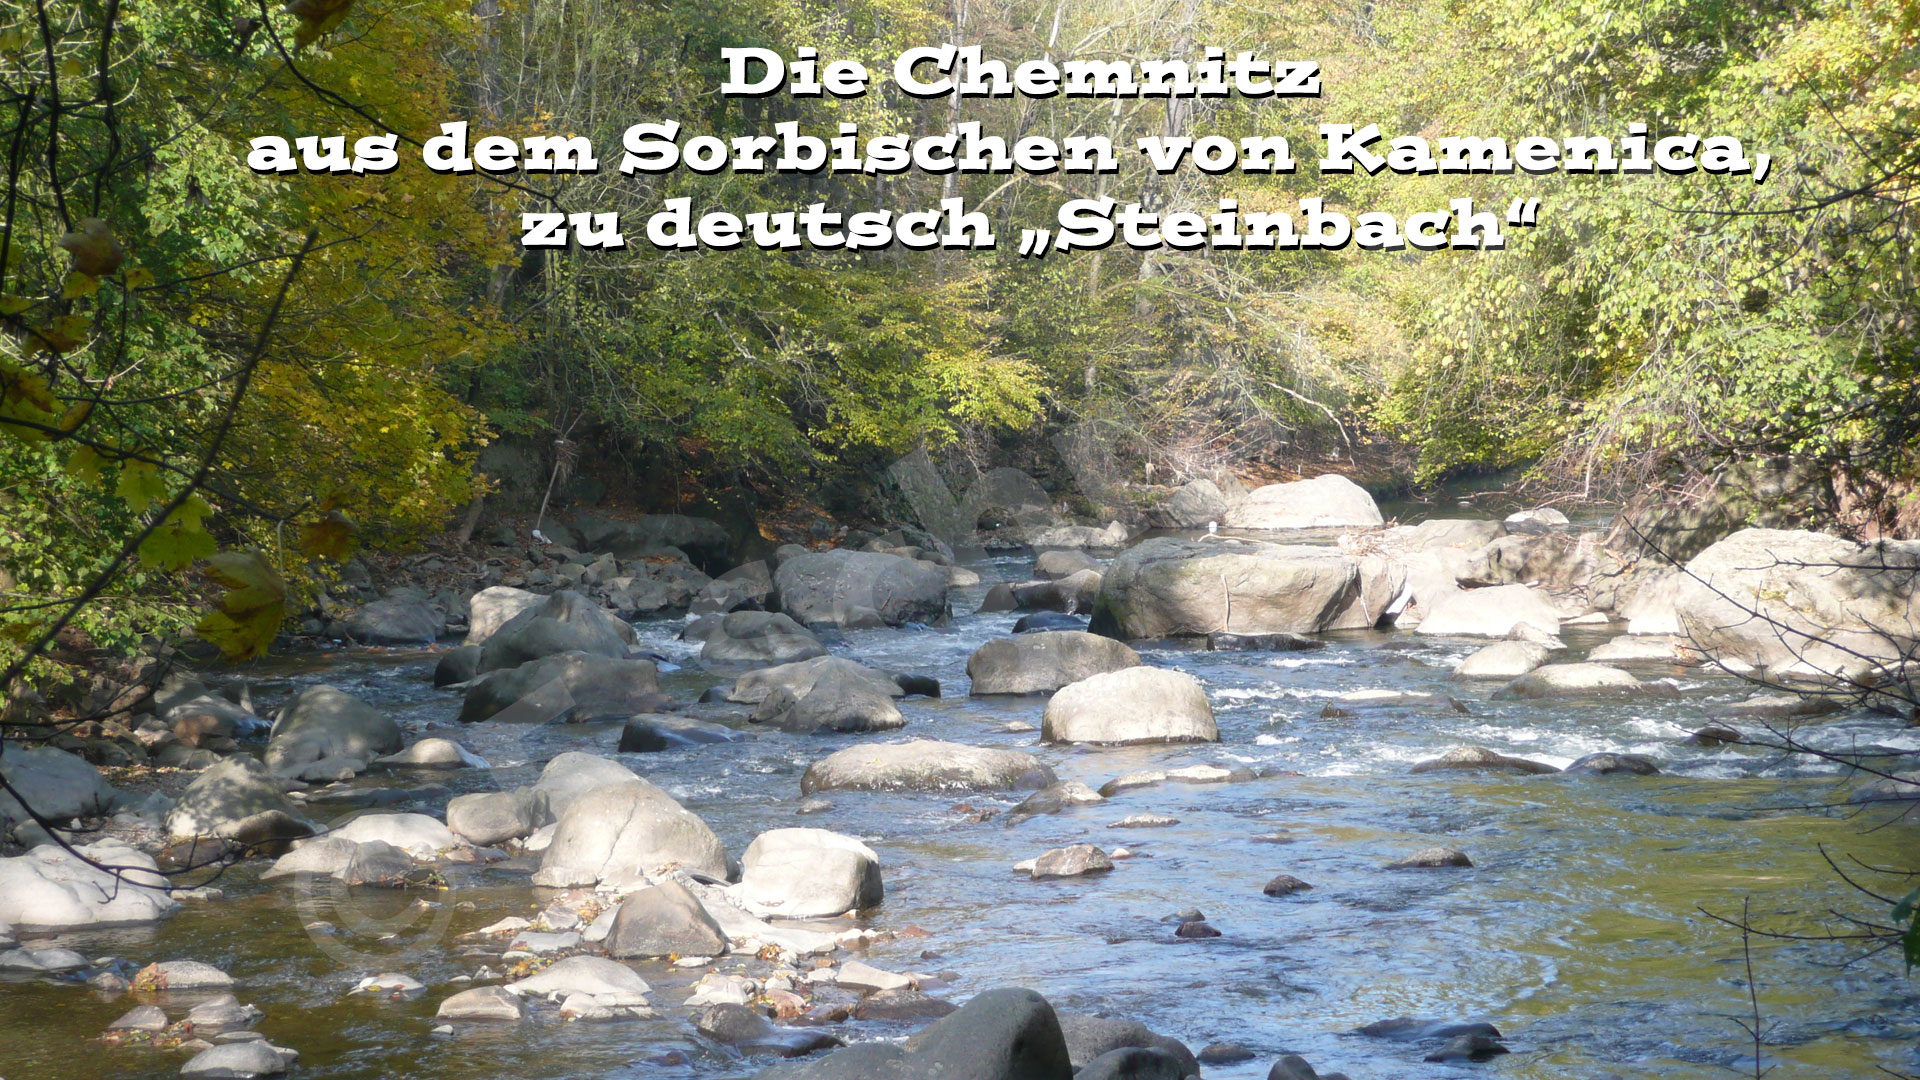 Der Namensursprung des Flusses ist im Chemnitztal bei Markersdorf deutlich zu erkennen